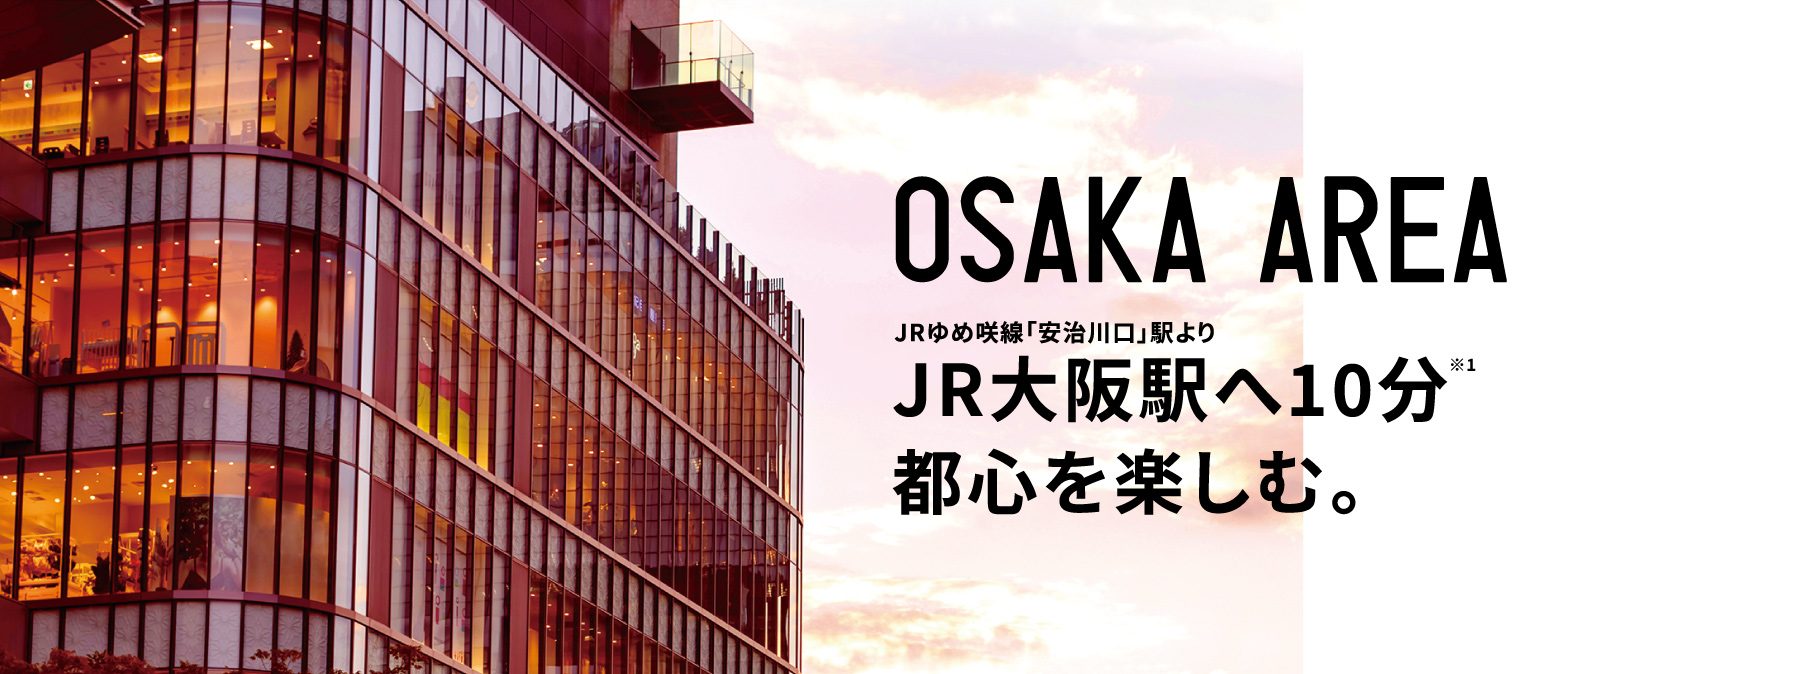 JR大阪駅へ10分。都心を楽しむ。